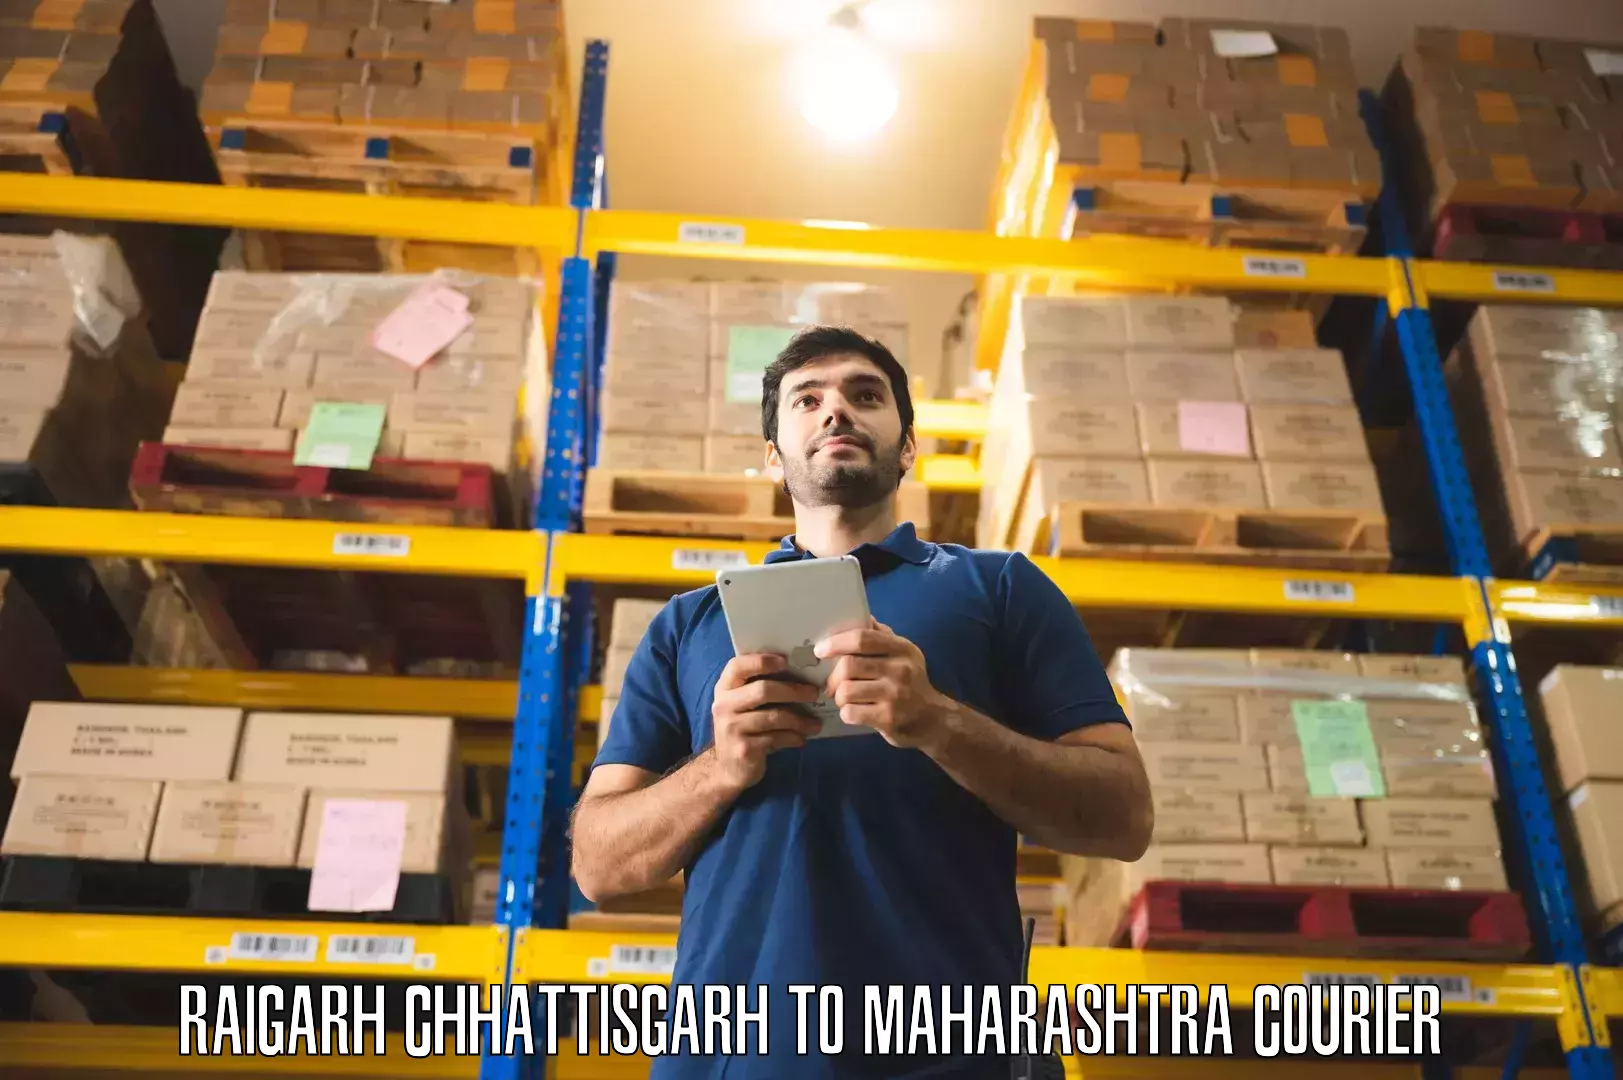 Skilled furniture movers Raigarh Chhattisgarh to IIT Mumbai